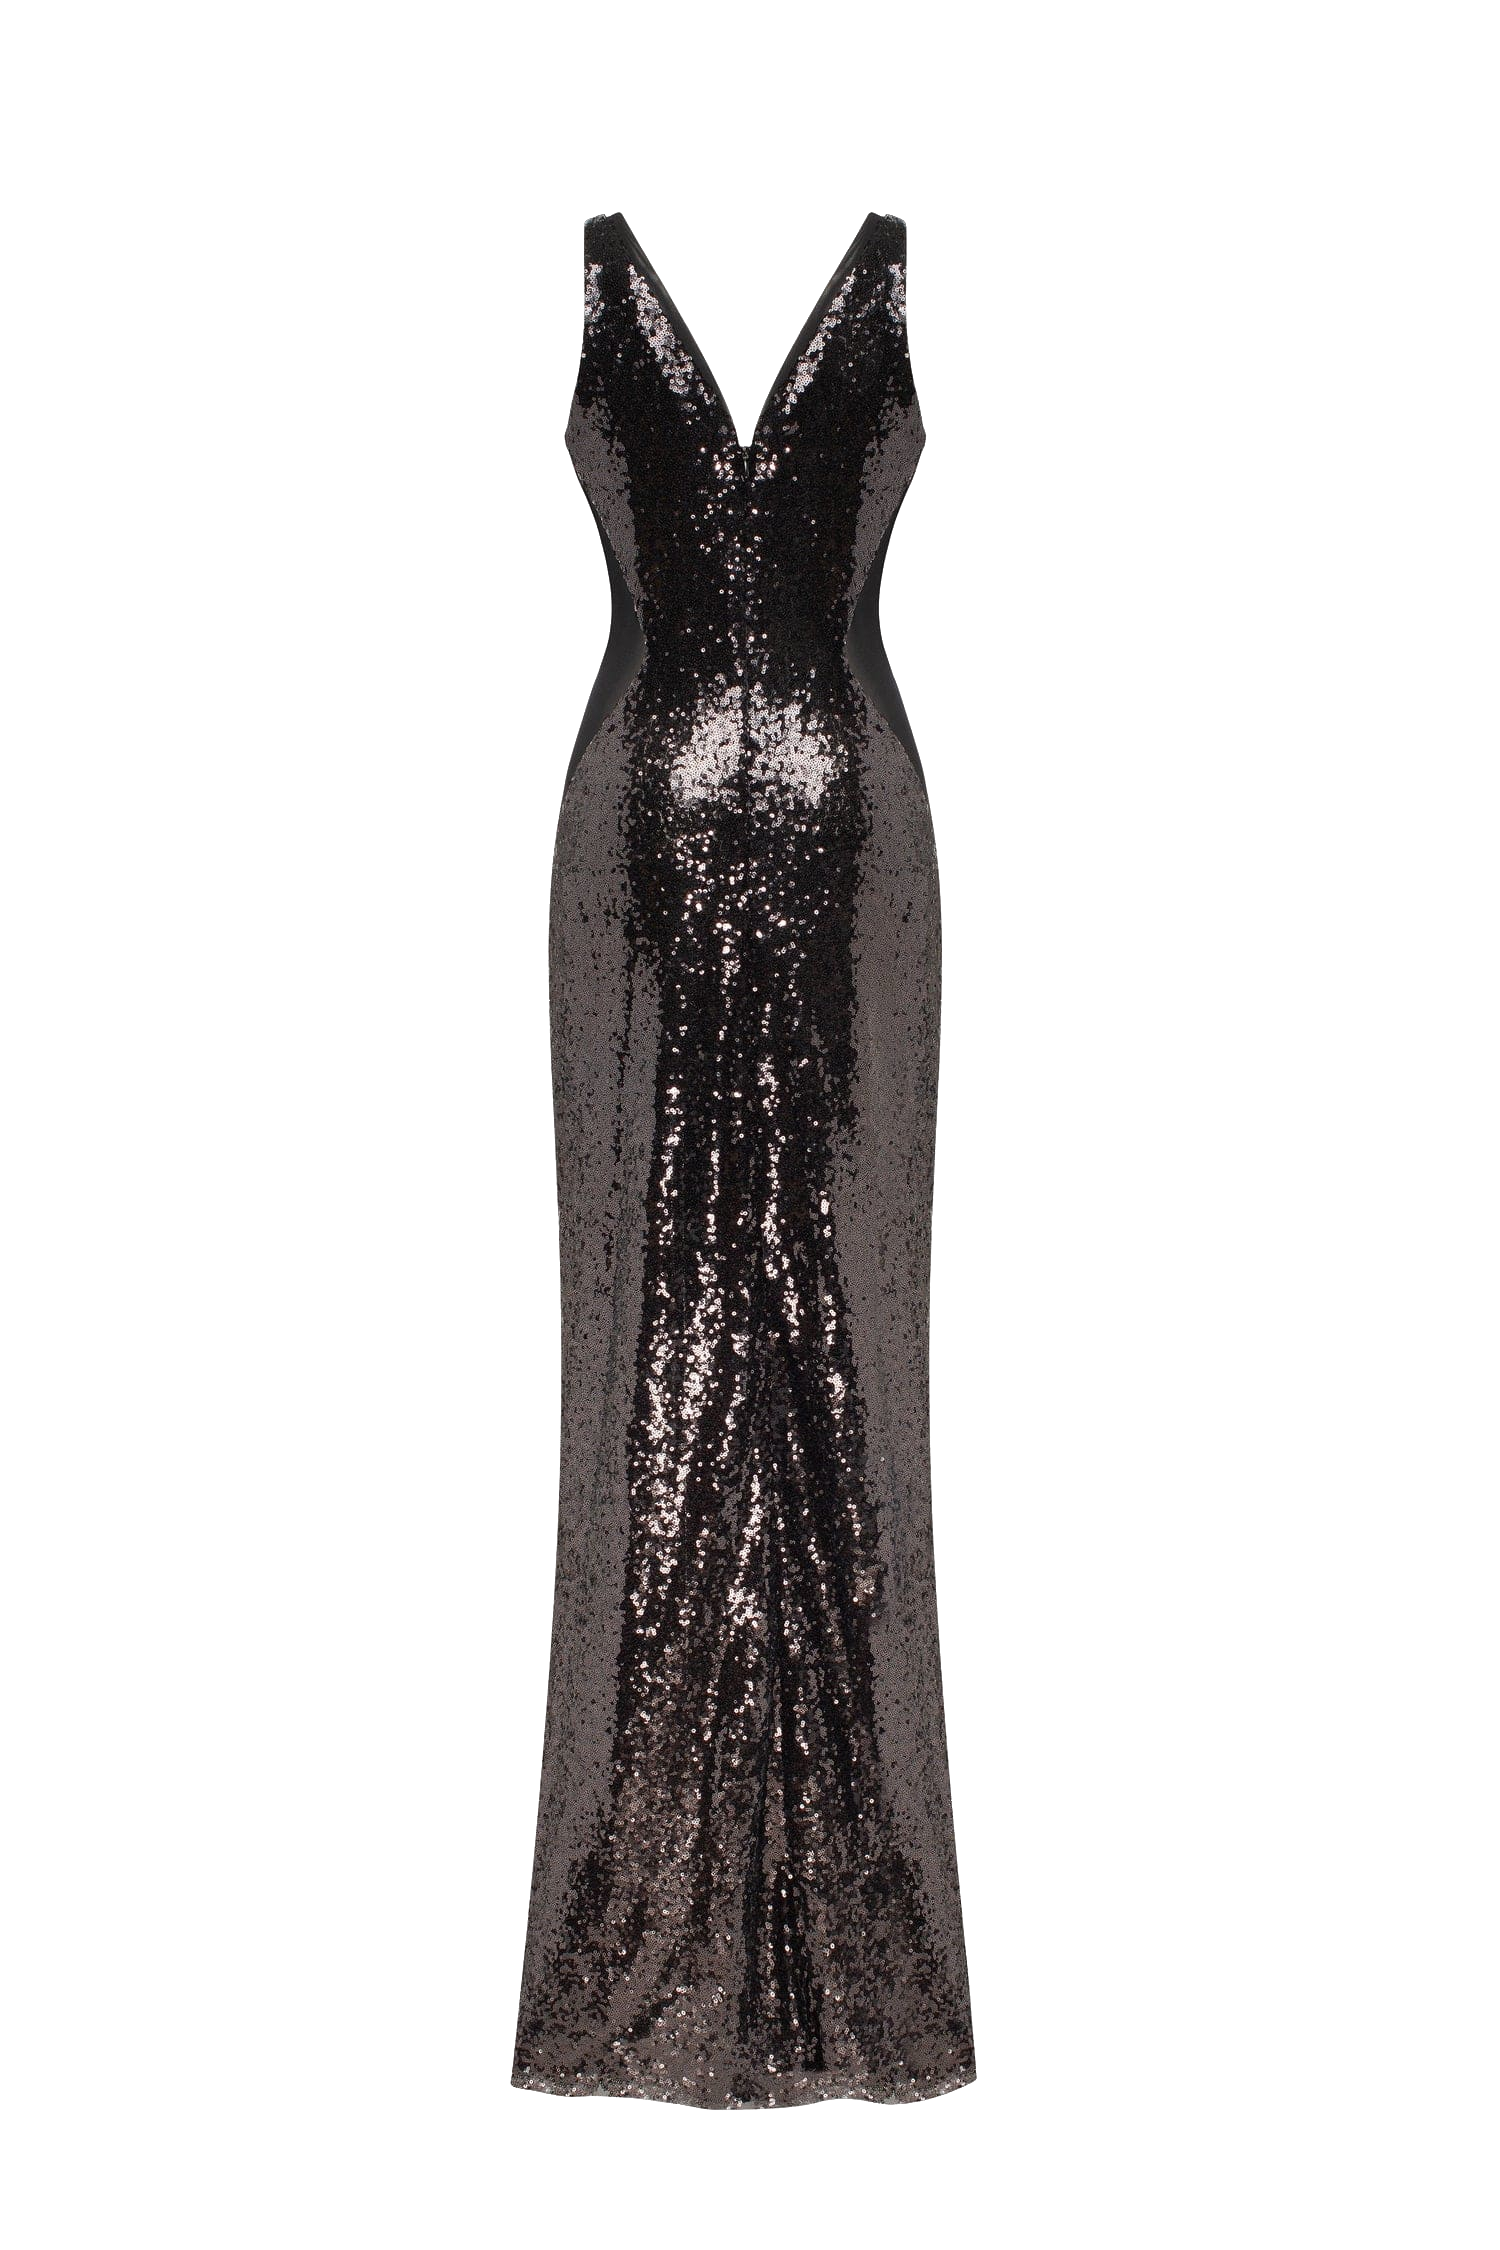 Shop Milla Dazzling Fully Sequined Black Maxi Dress, Smoky Quartz